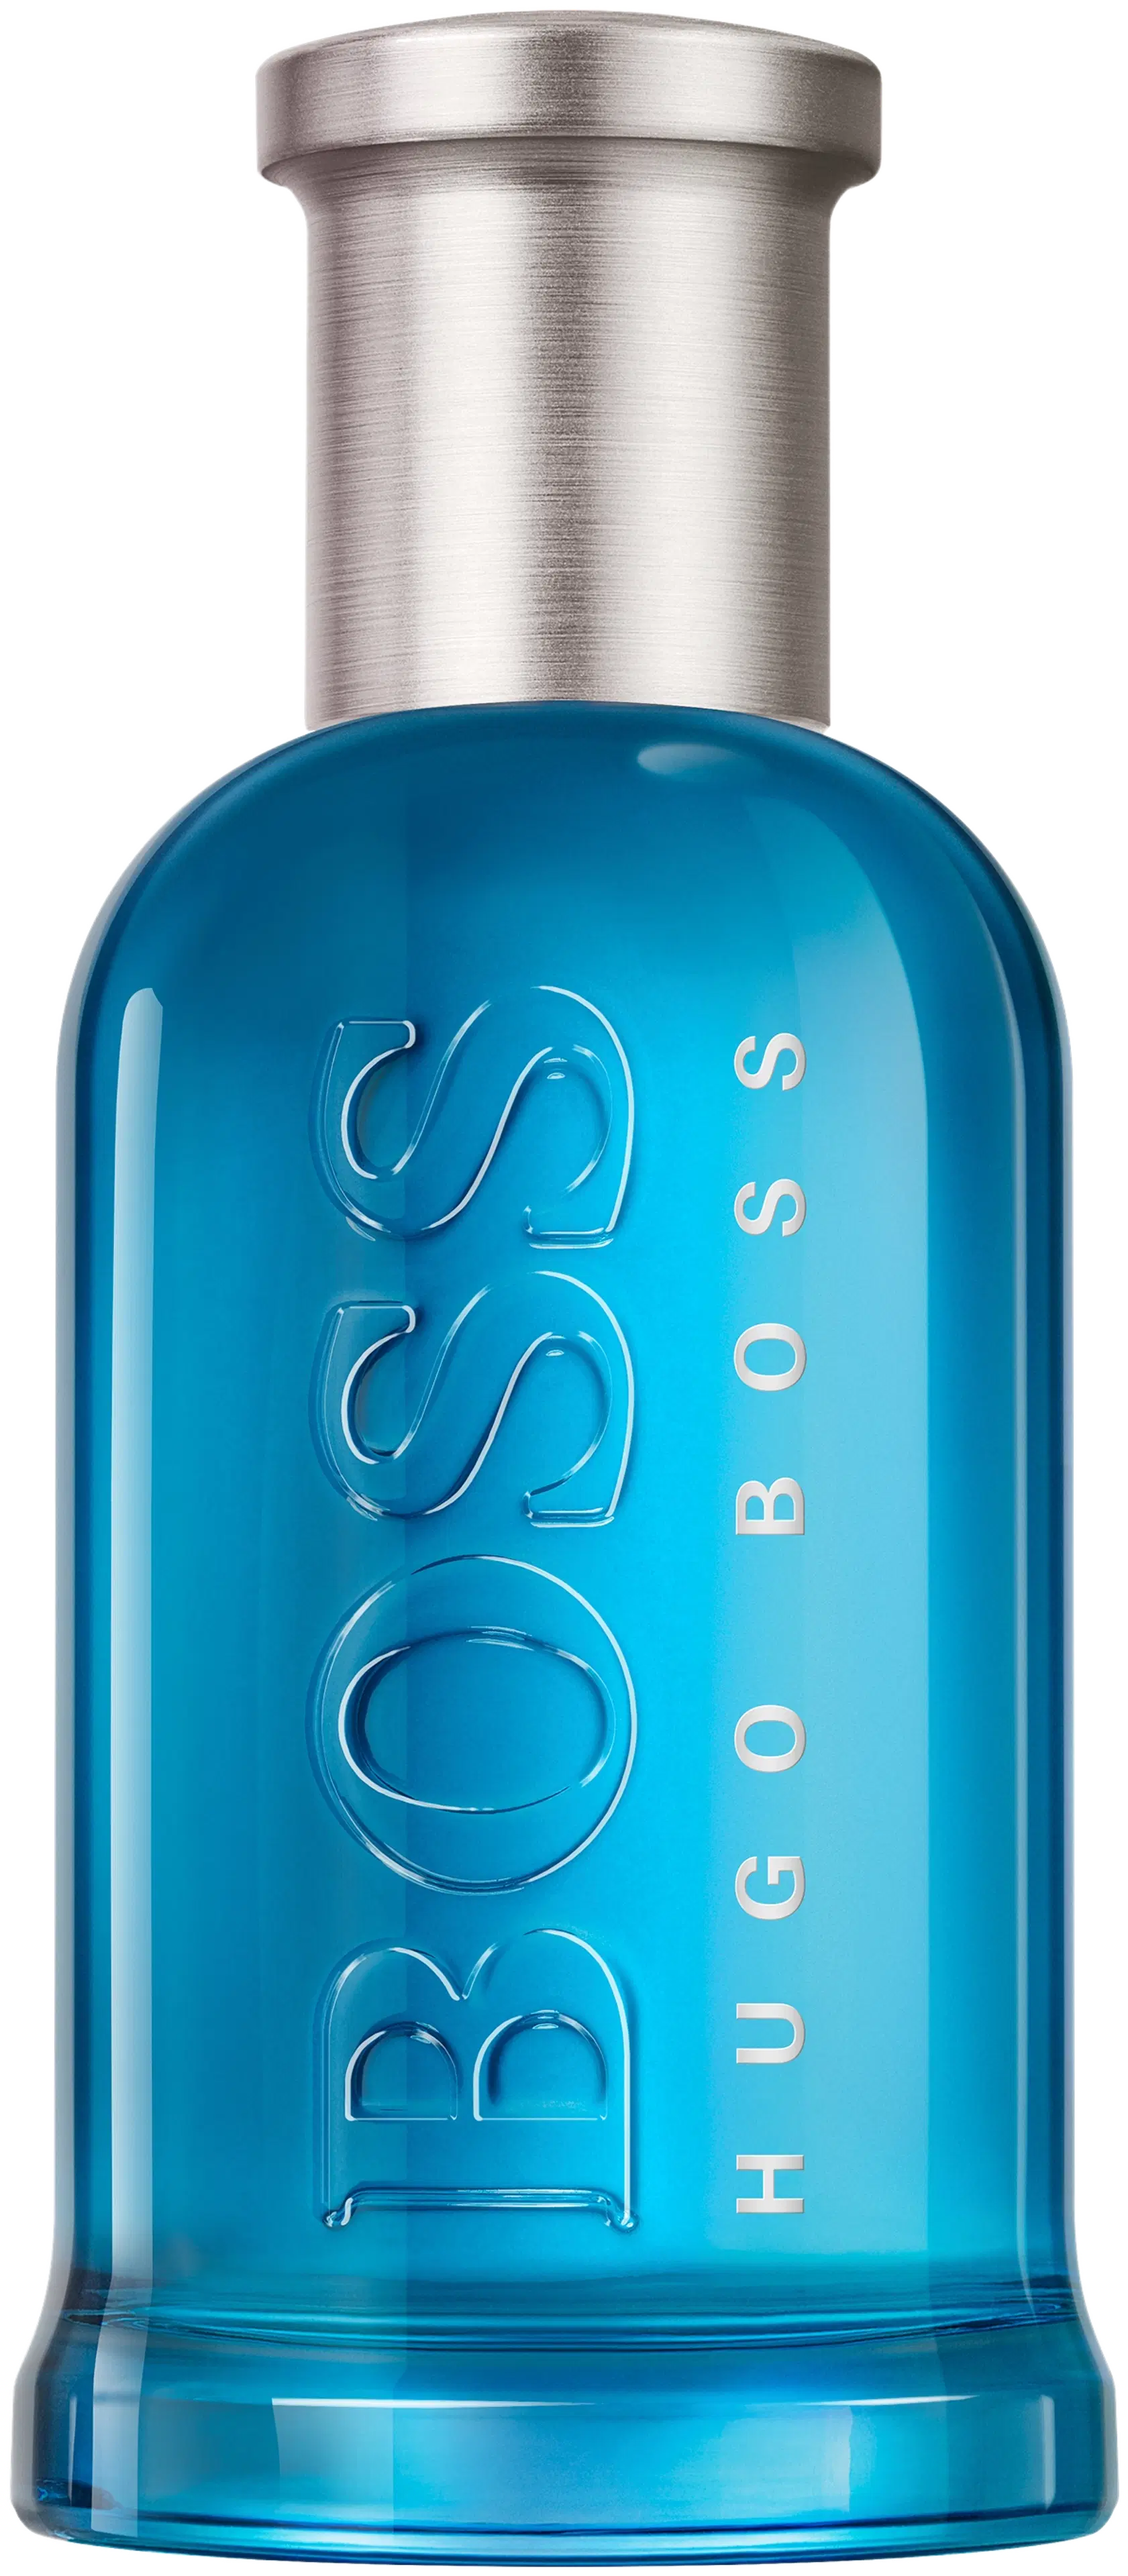 Hugo Boss Bottled Pacific EdT tuoksu 50 ml